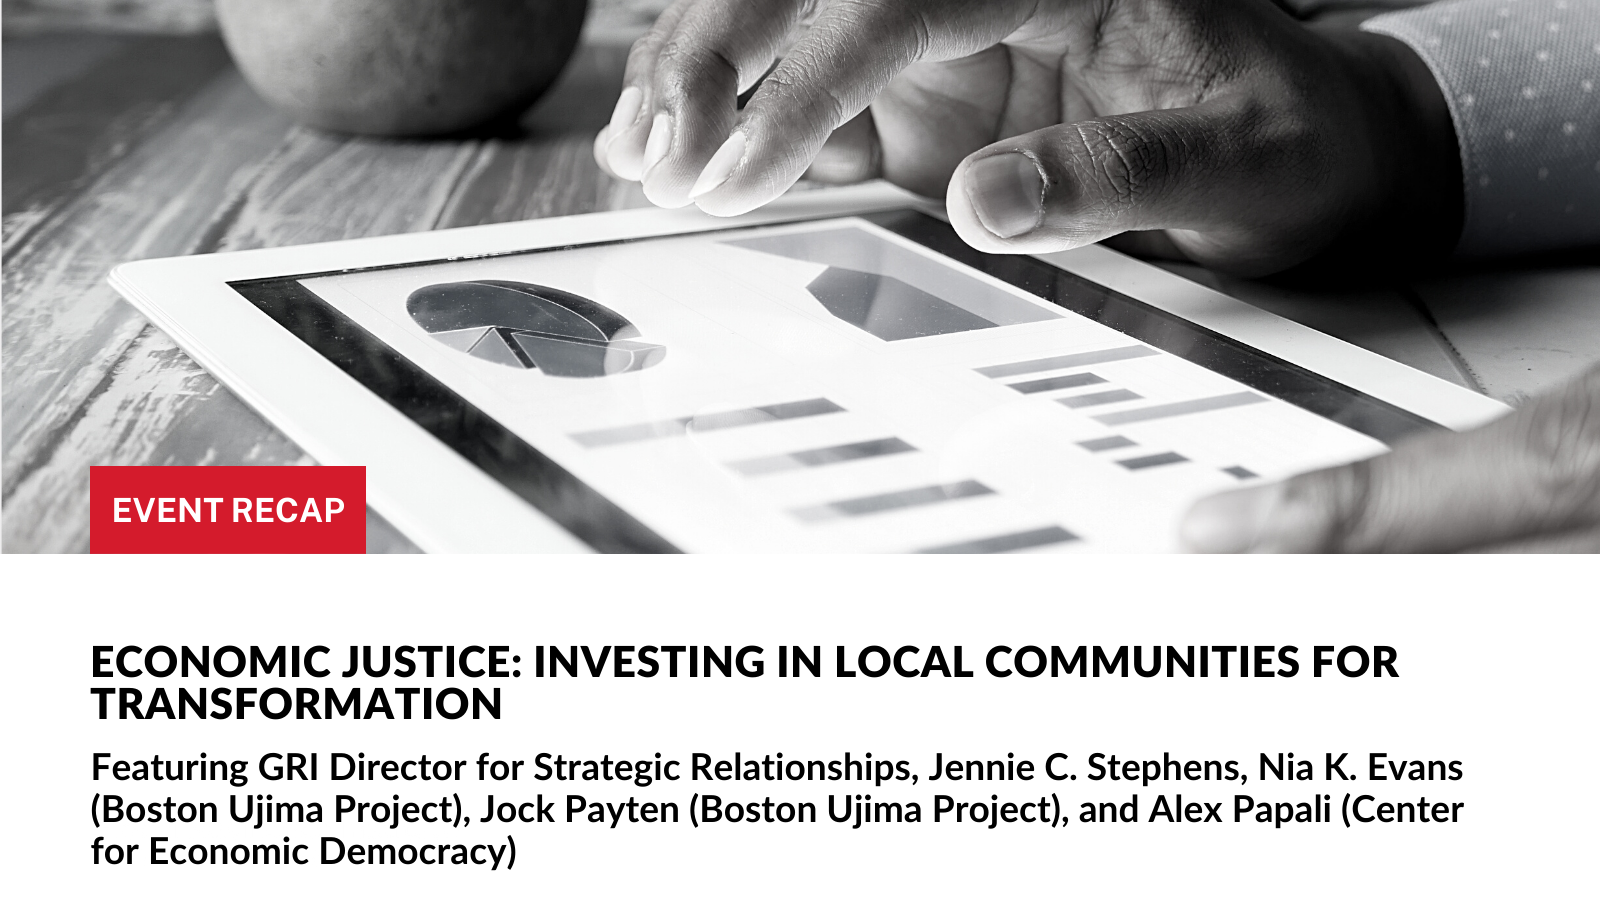 Event Recap: Economic Justice: Investing in Local Communities for Transformation